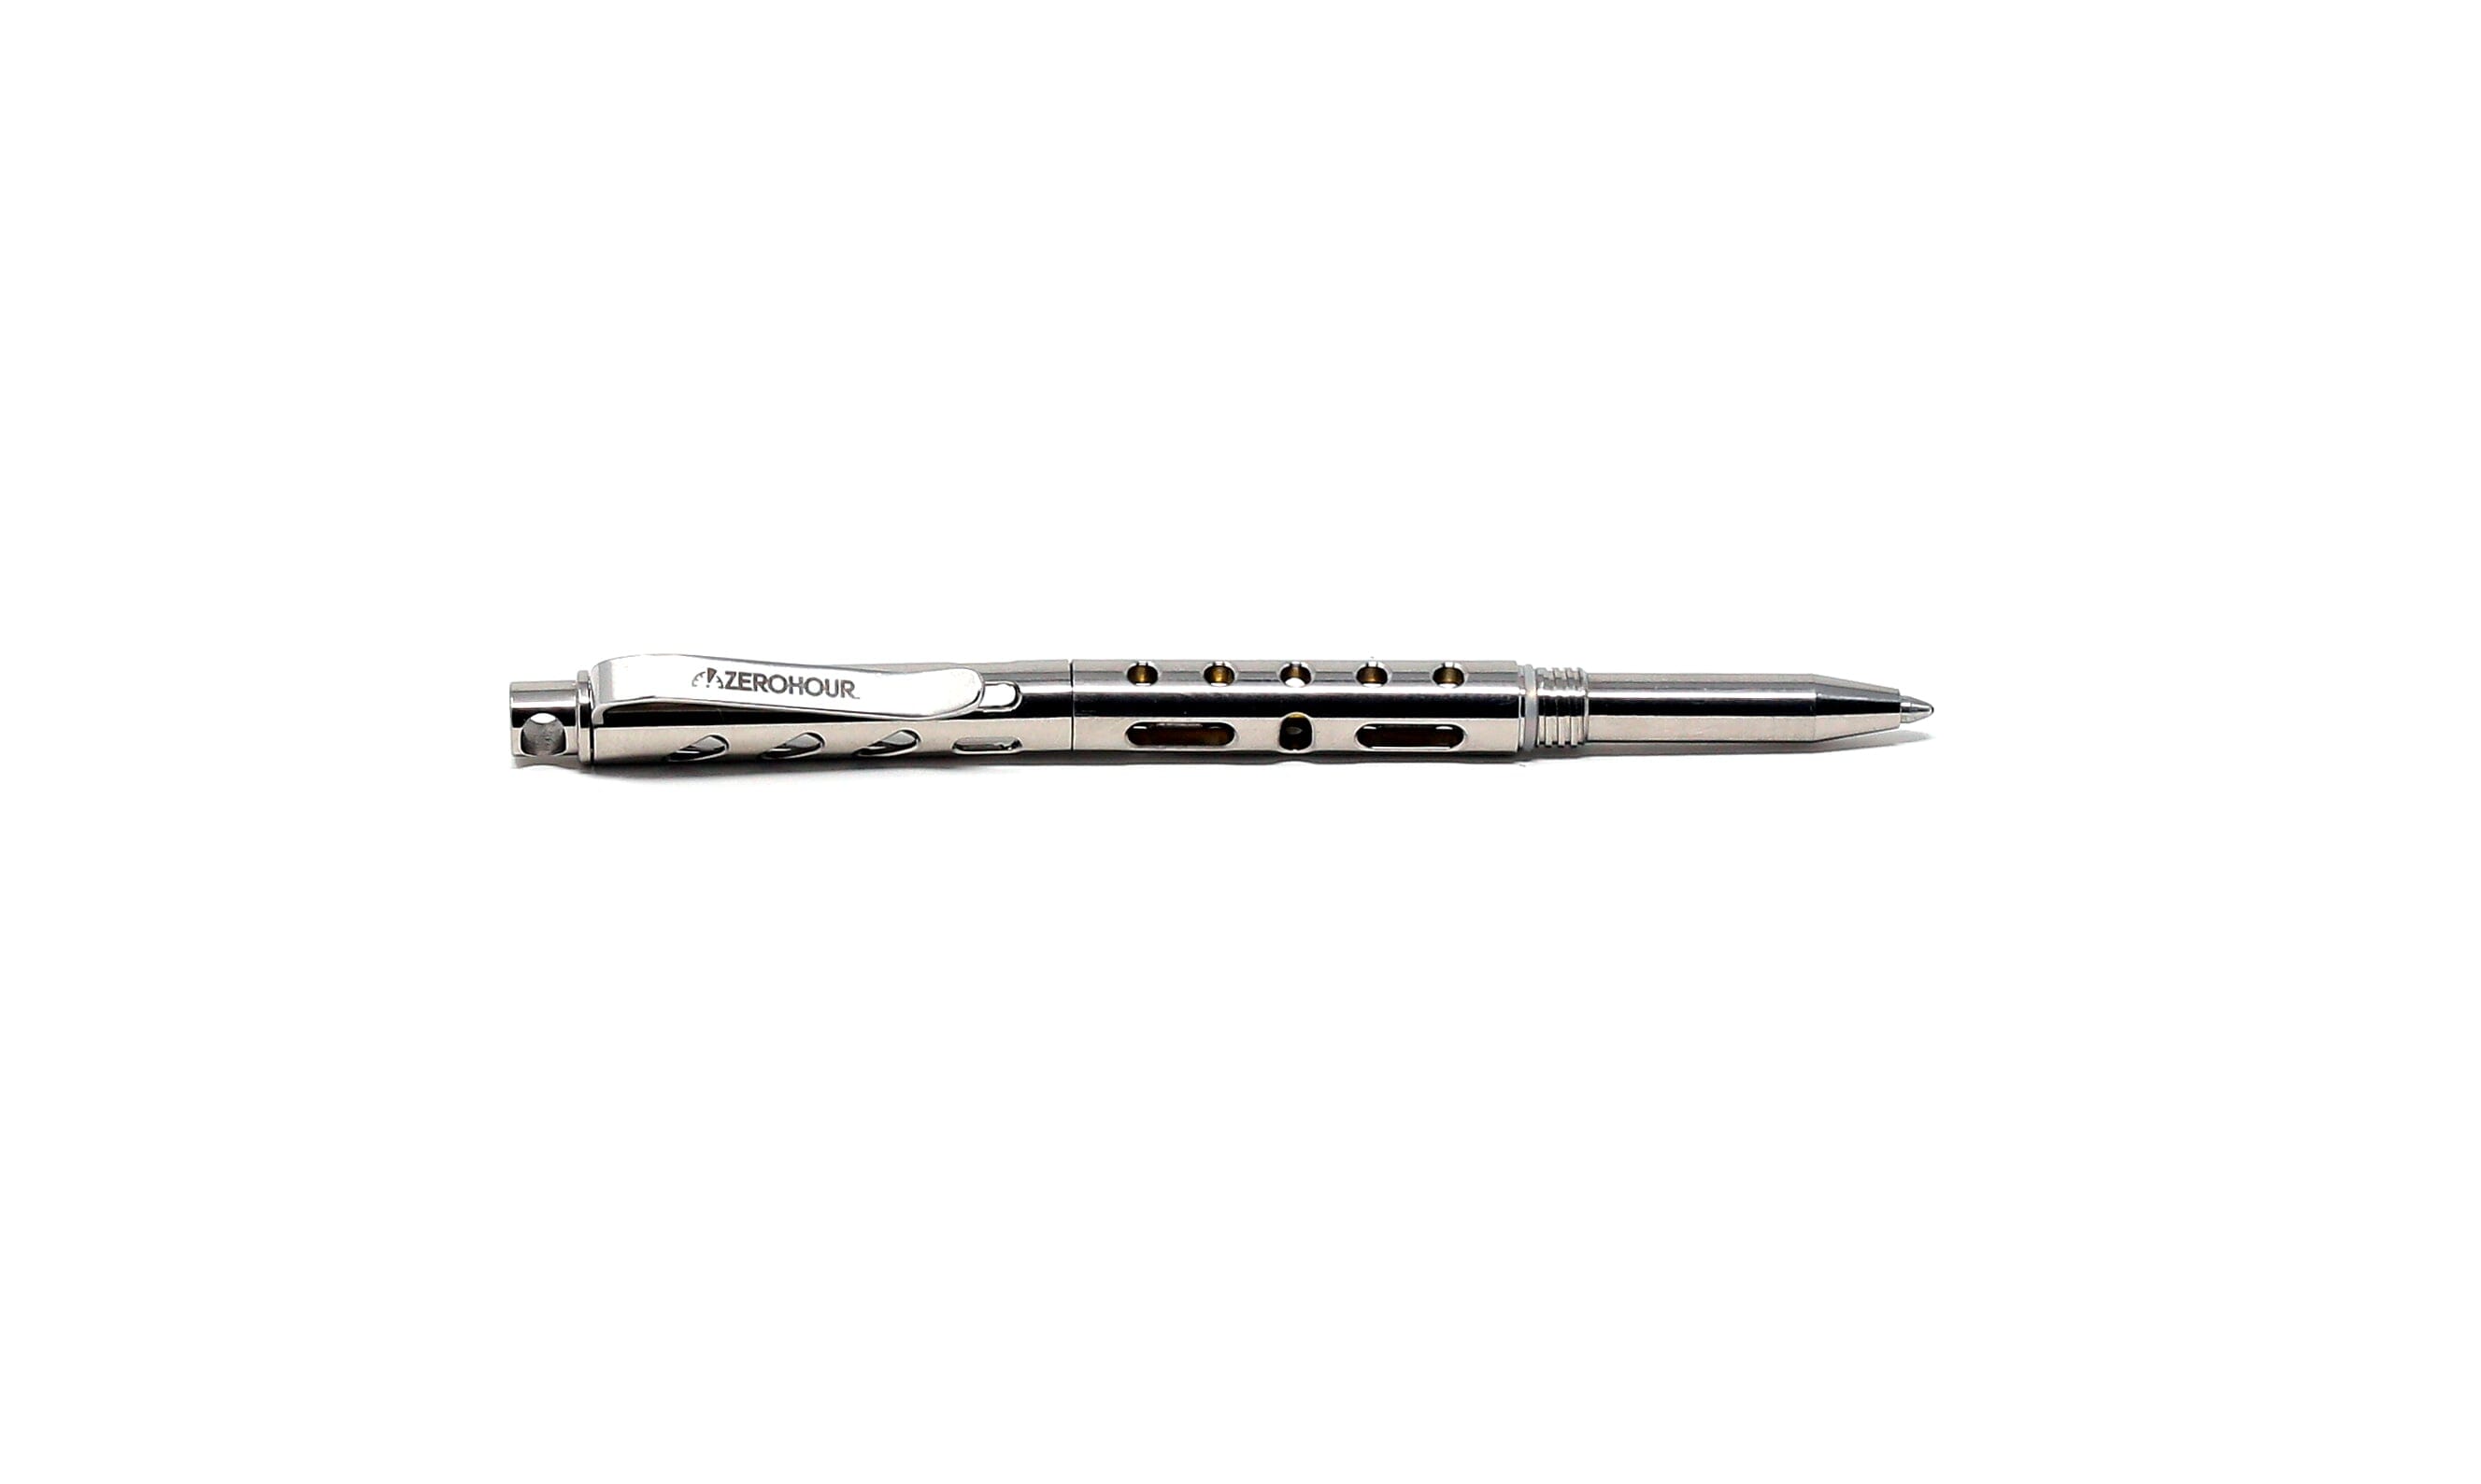 Pocket Size Keychain Pen Edc Pocket Pen Titanium Ballpoint Pen